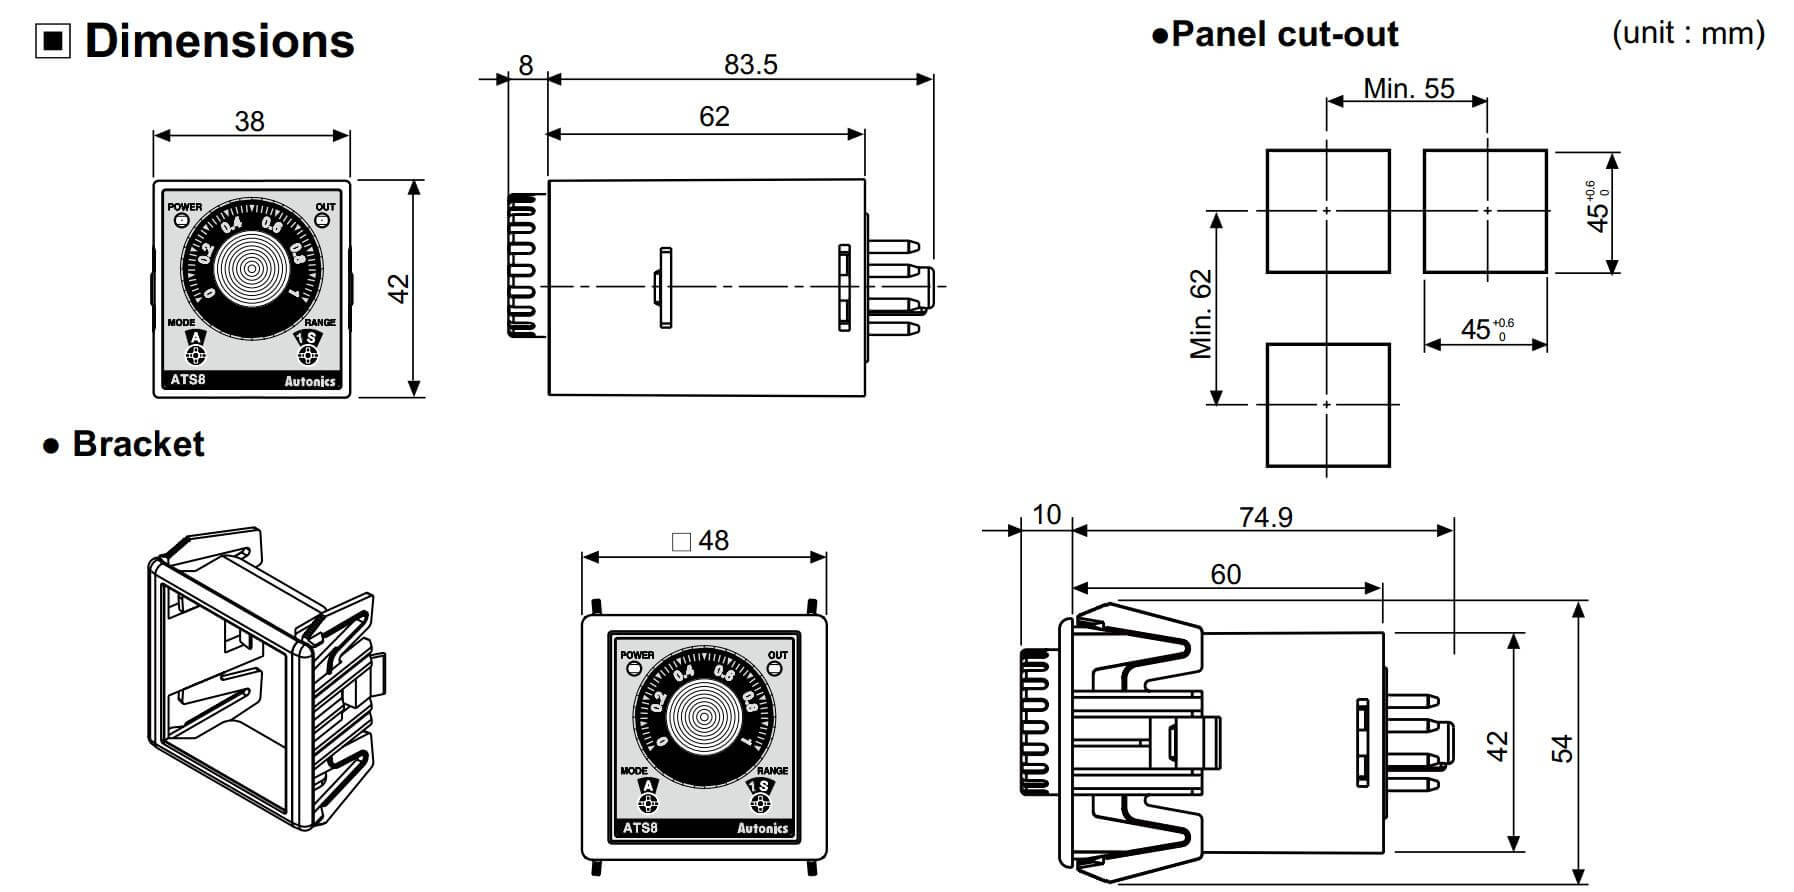 Cấu tạo và Kích thước Autonics ATS8-11: Bộ định thời gian (Timer)